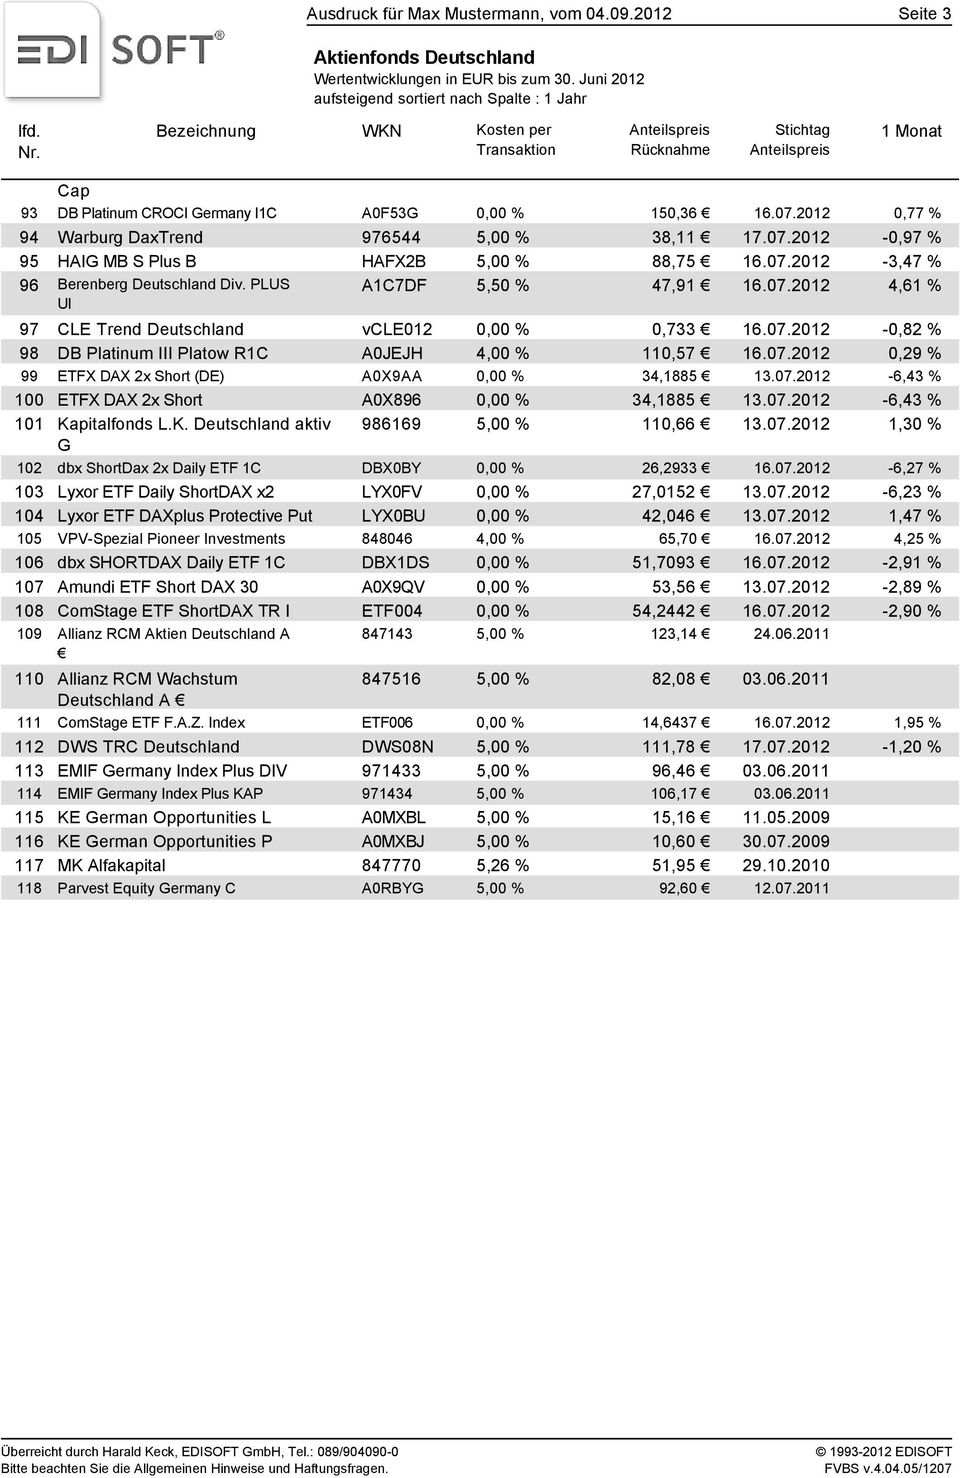 2012 0,77 % 94 Warburg DaxTrend 976544 5,00 % 38,11 17.07.2012-0,97 % 95 HAIG MB S Plus B HAFX2B 5,00 % 88,75 16.07.2012-3,47 % 96 Berenberg Deutschland Div. PLUS UI A1C7DF 5,50 % 47,91 16.07.2012 4,61 % 97 CLE Trend Deutschland vcle012 0,00 % 0,733 16.